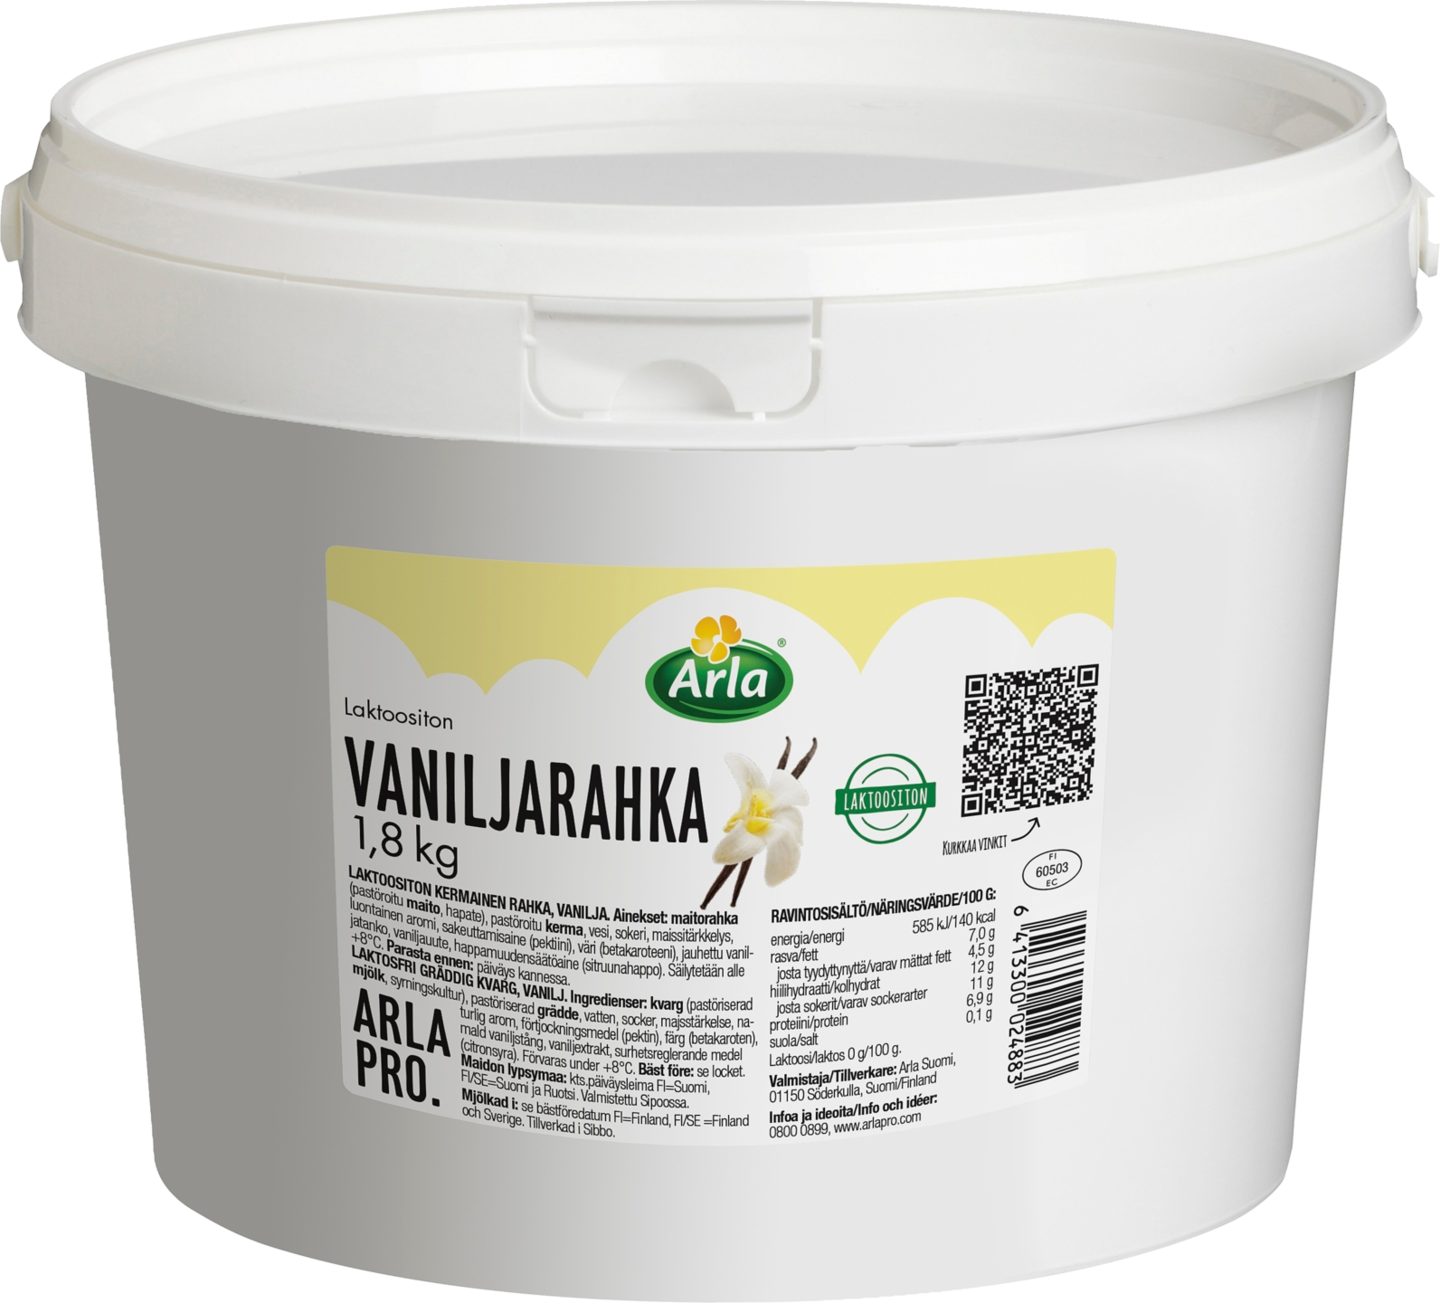 Arla Pro Kausimaku vaniljarahka laktoositon 1,8kg